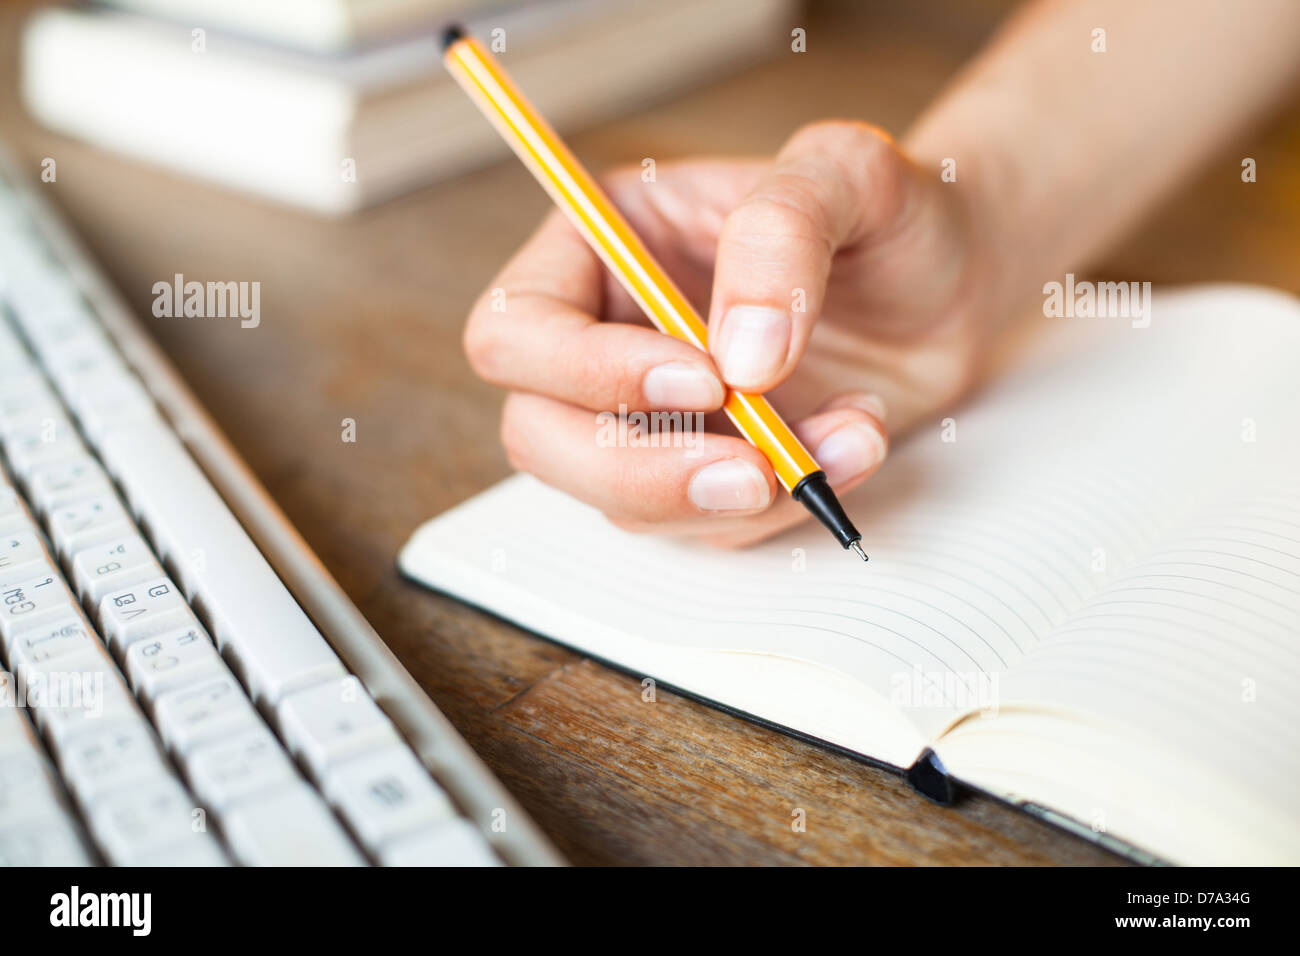 Mani scrive una penna in un notebook, la tastiera del computer e una pila di libri in background. Foto Stock